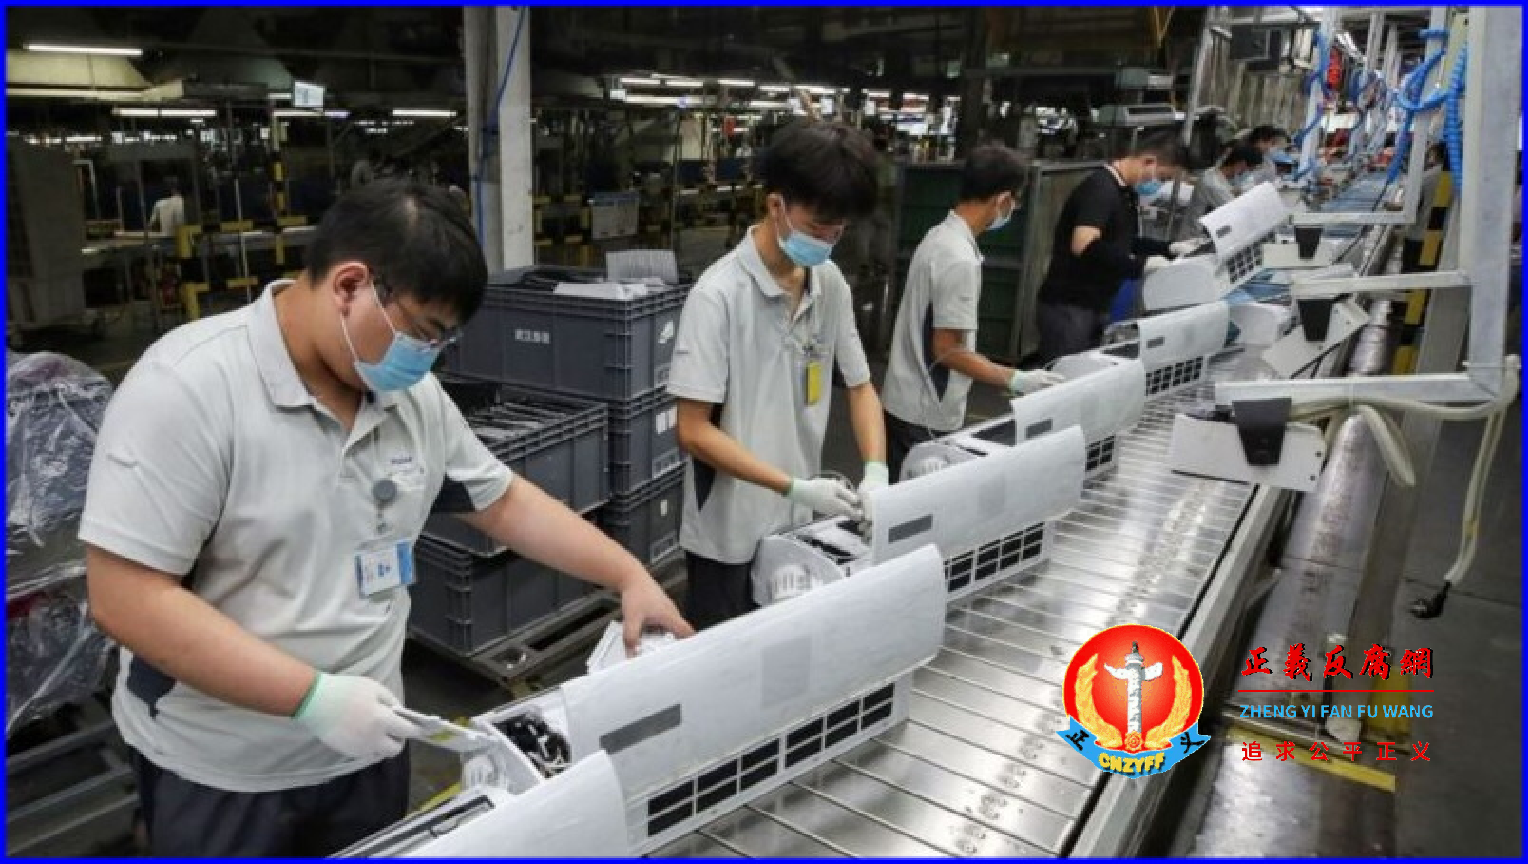 湖北省武汉市海尔工厂空调生产线的工人正在工作。.png